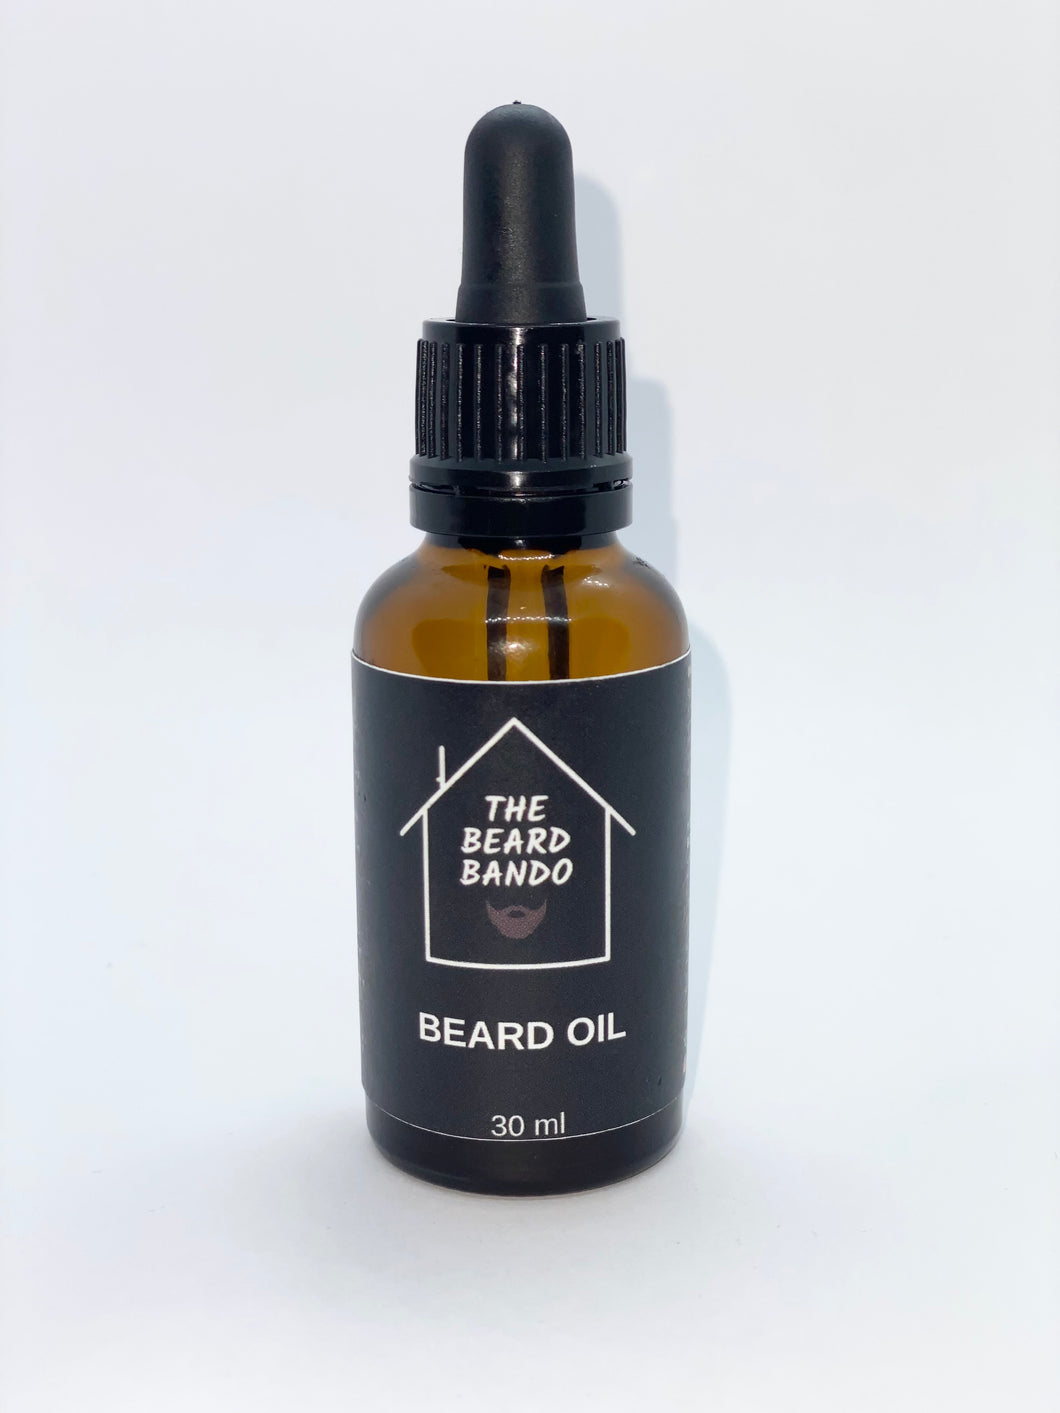 Bando Beard Oil #3 by The Beard Bando